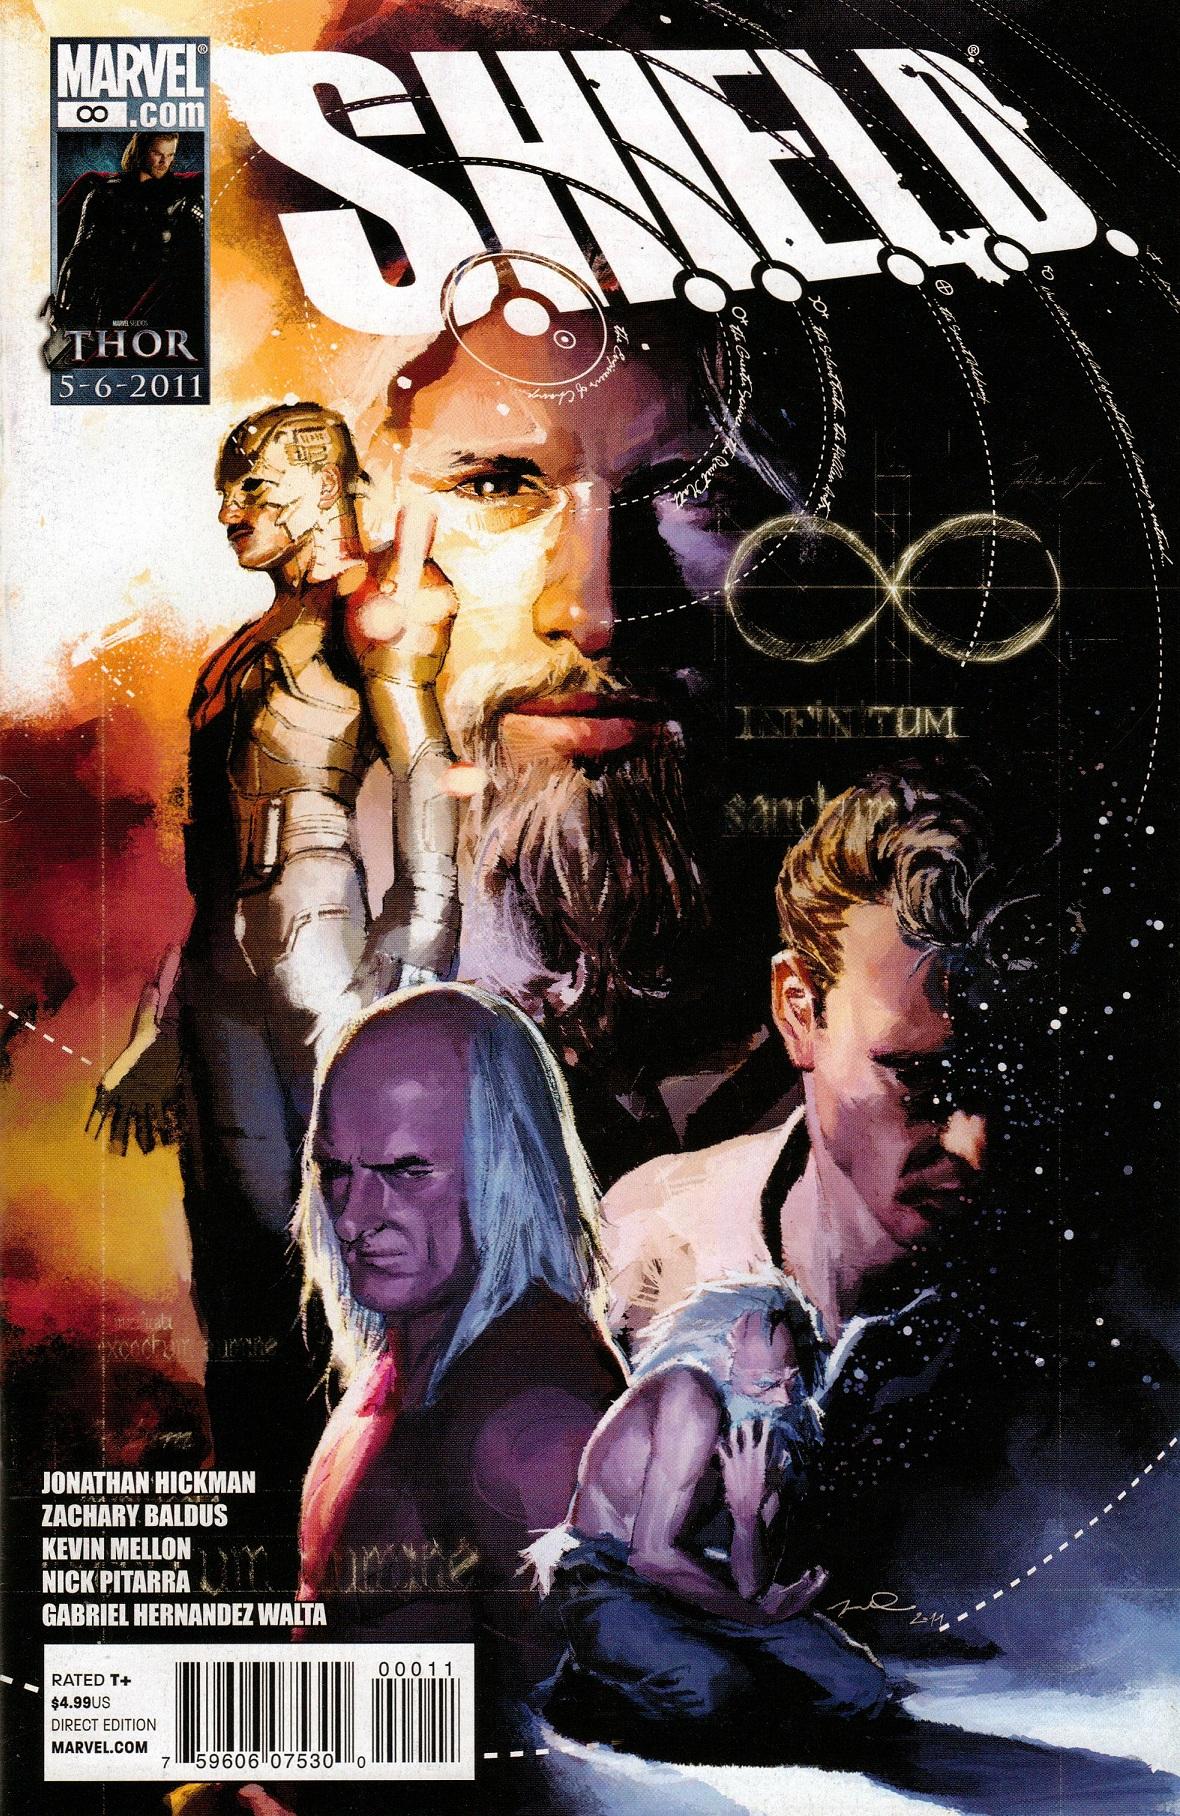 S.H.I.E.L.D.: Infinity Vol. 1 #1